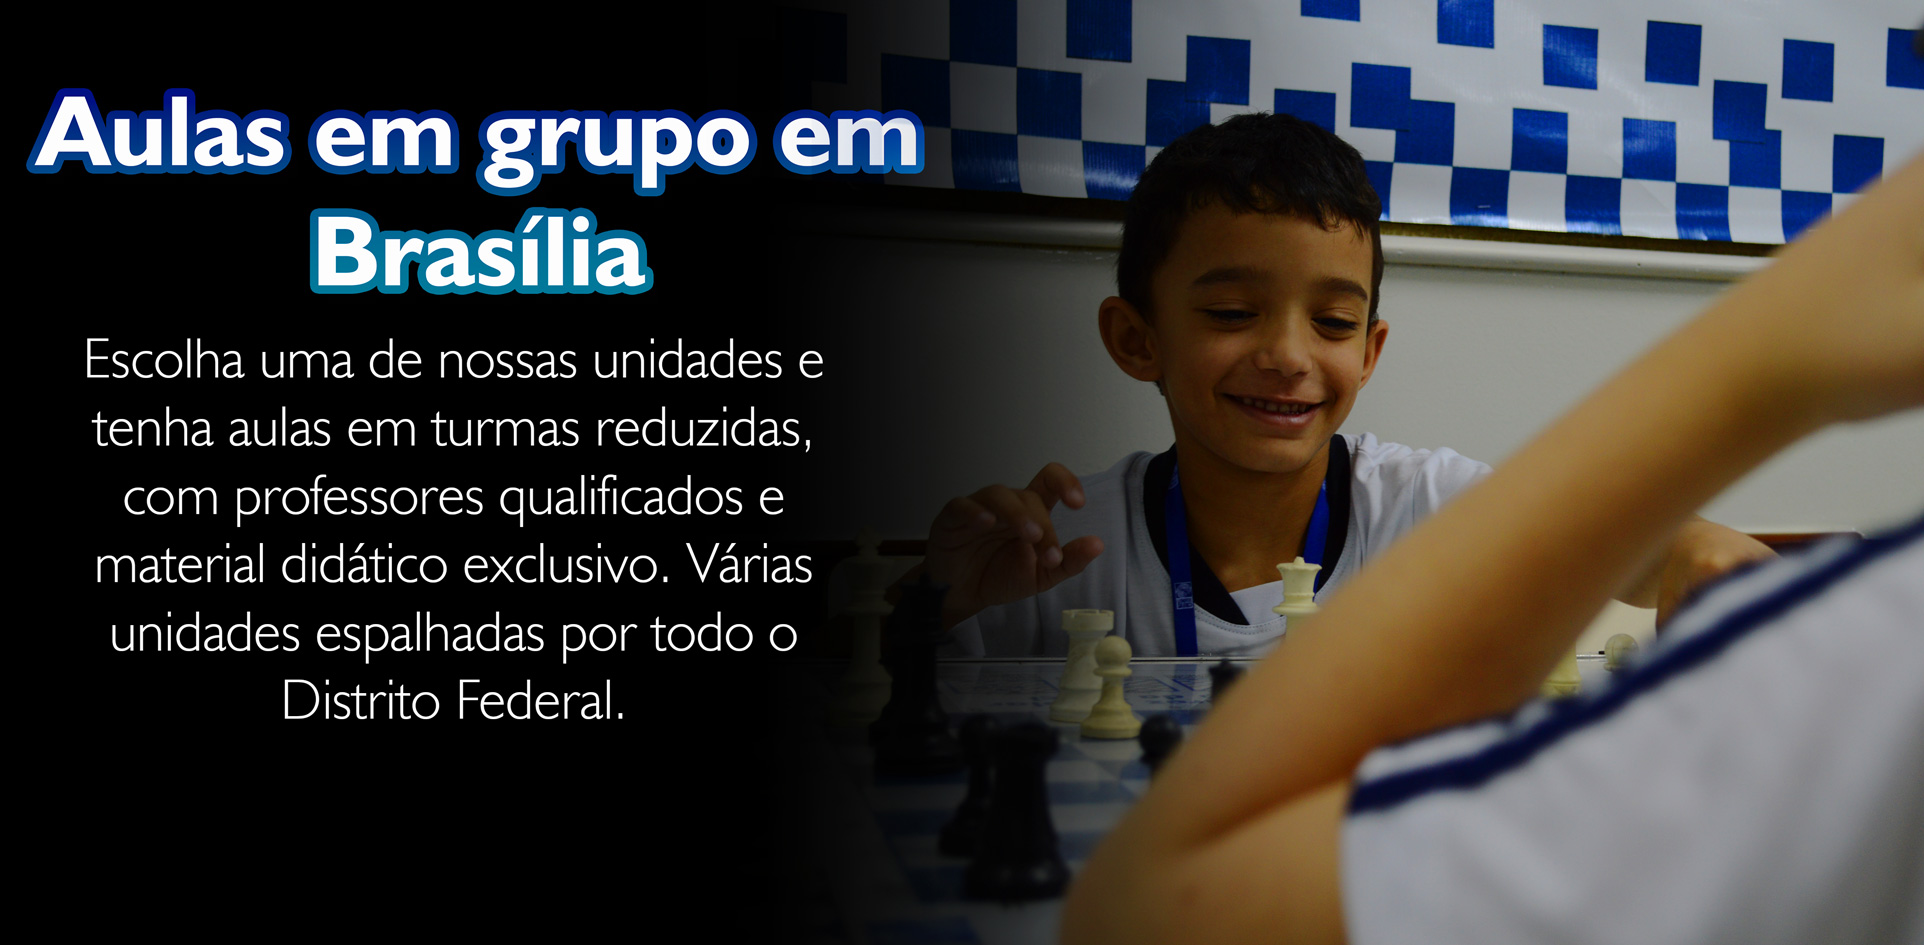 Academia XadrezValle - Aulas de Xadrez para crianças na Academia  XadrezValle, em Brasília.